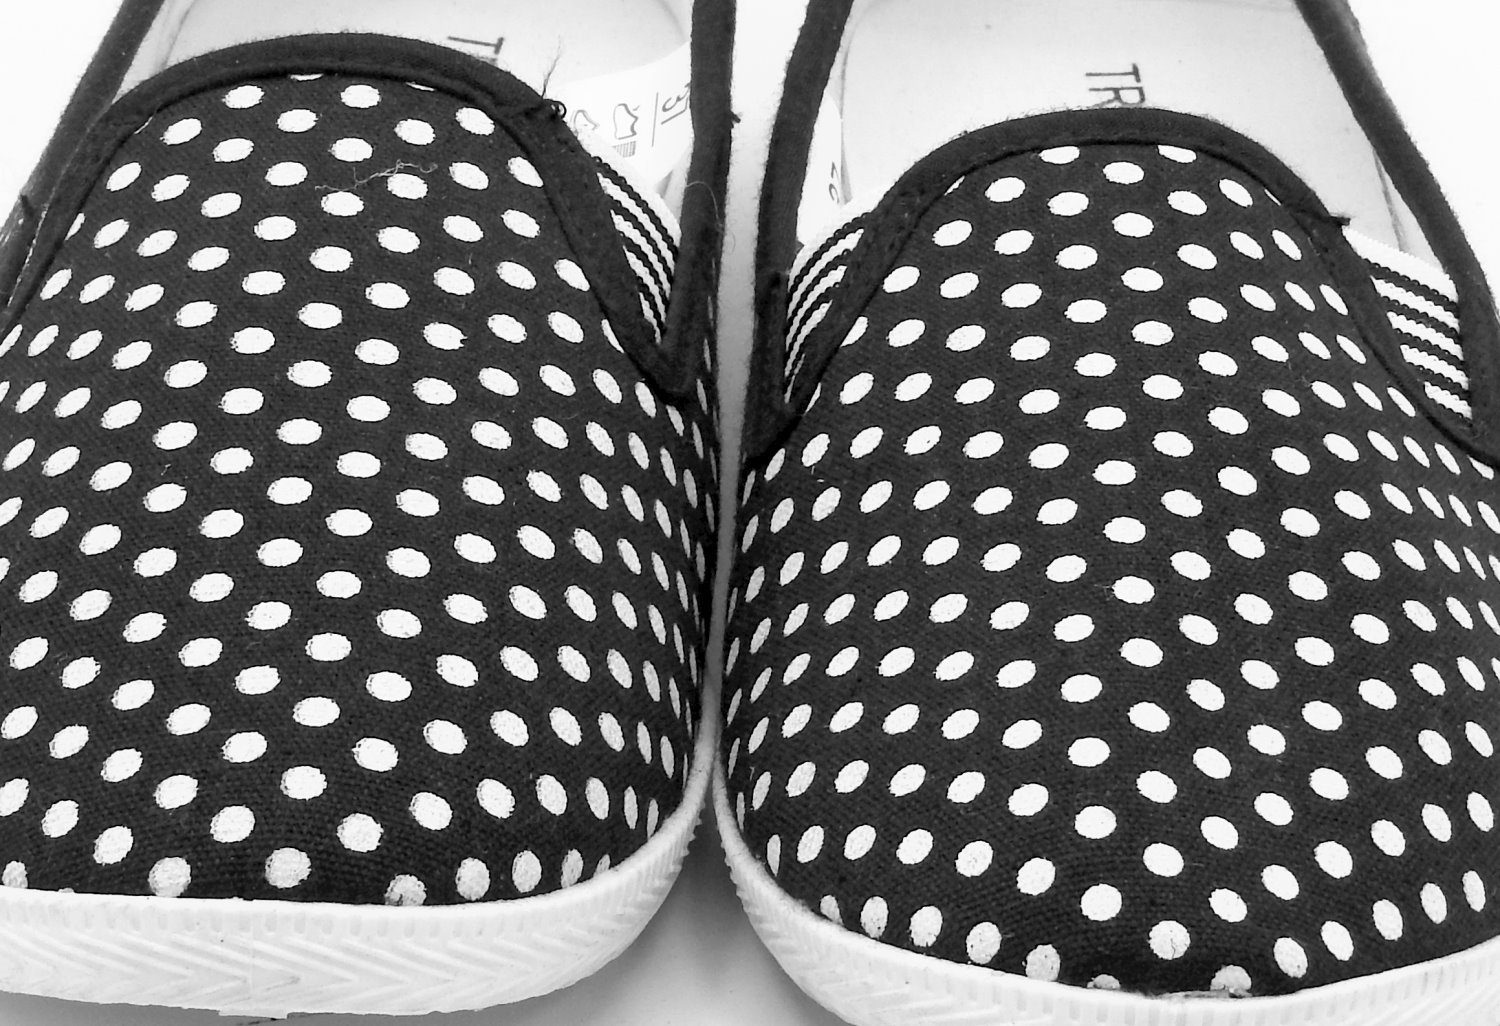 Schuhe Flats Slipper dynamic24 Loafer Canvas Schwarz Sneaker Freizeitschuhe Slip Damen Stoff On